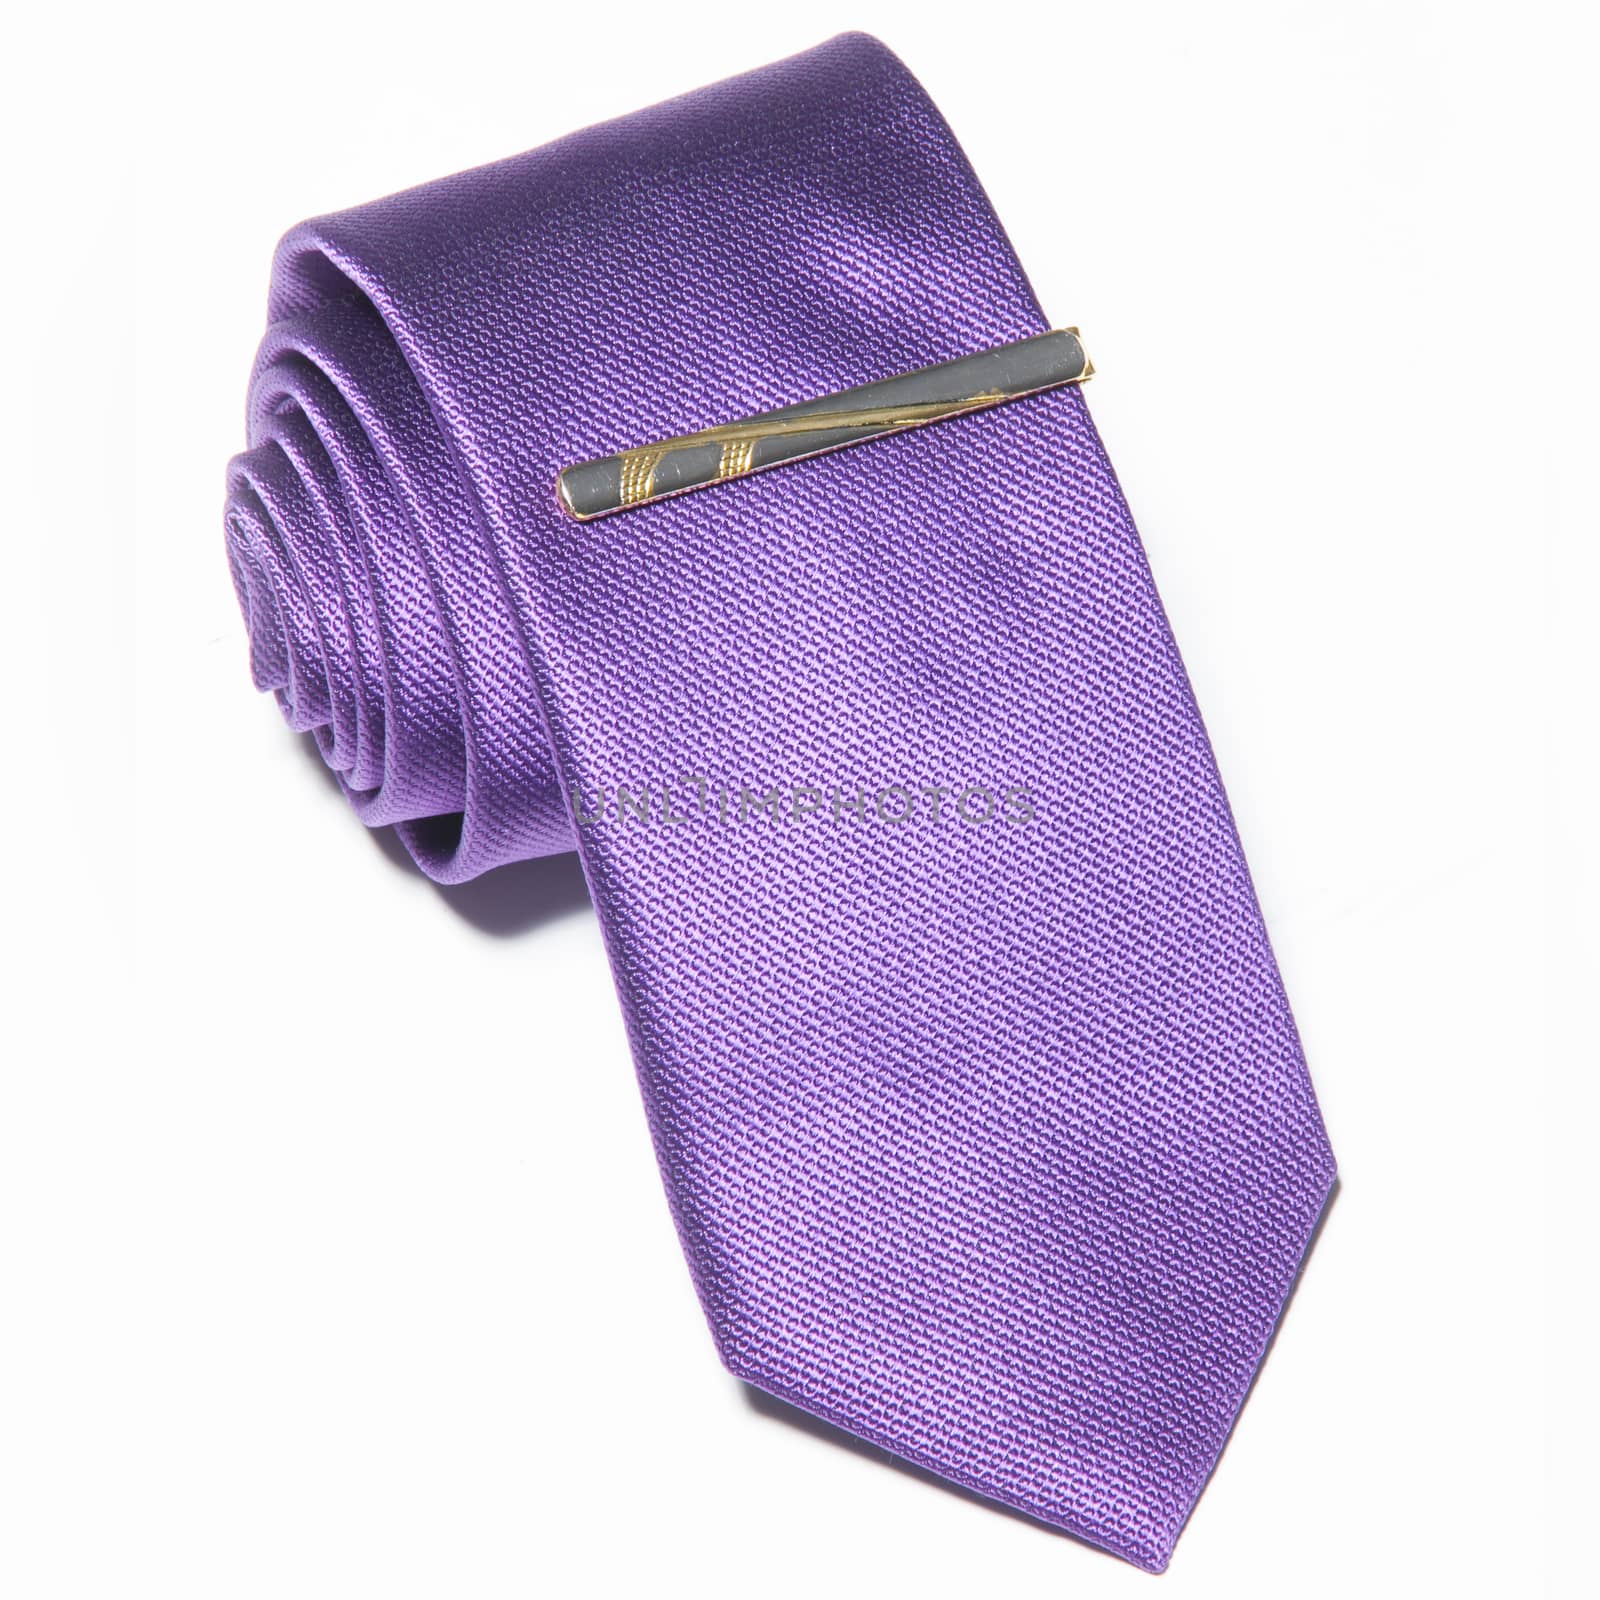 purple tie on a white background by sarymsakov